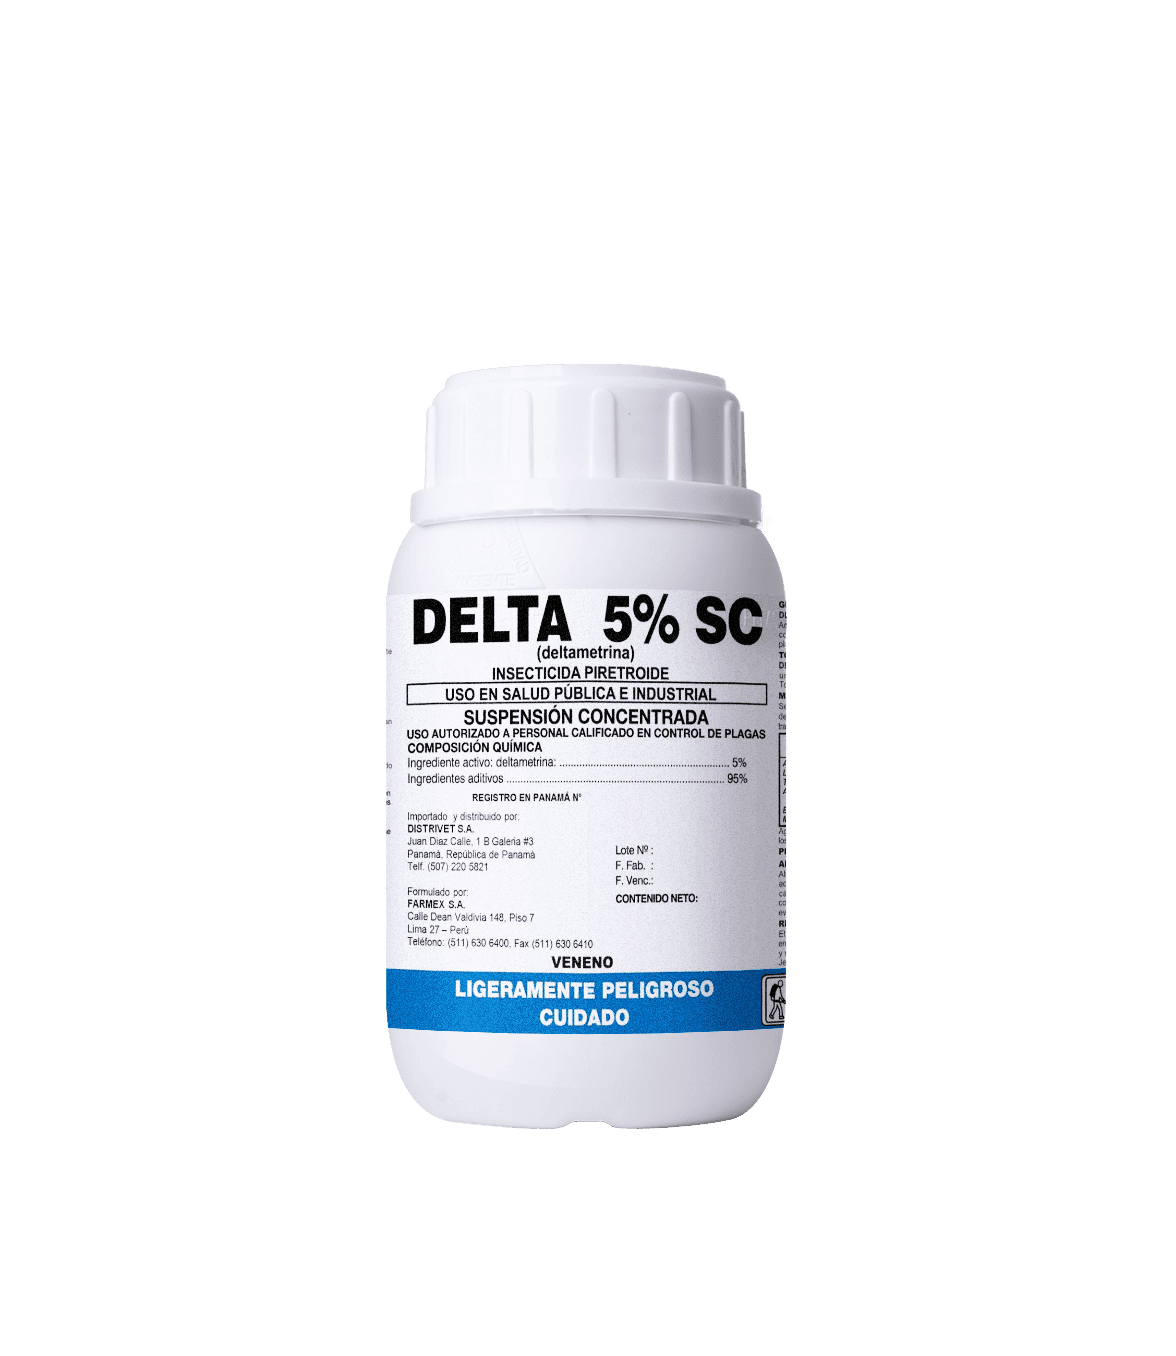 Delta 5% SC